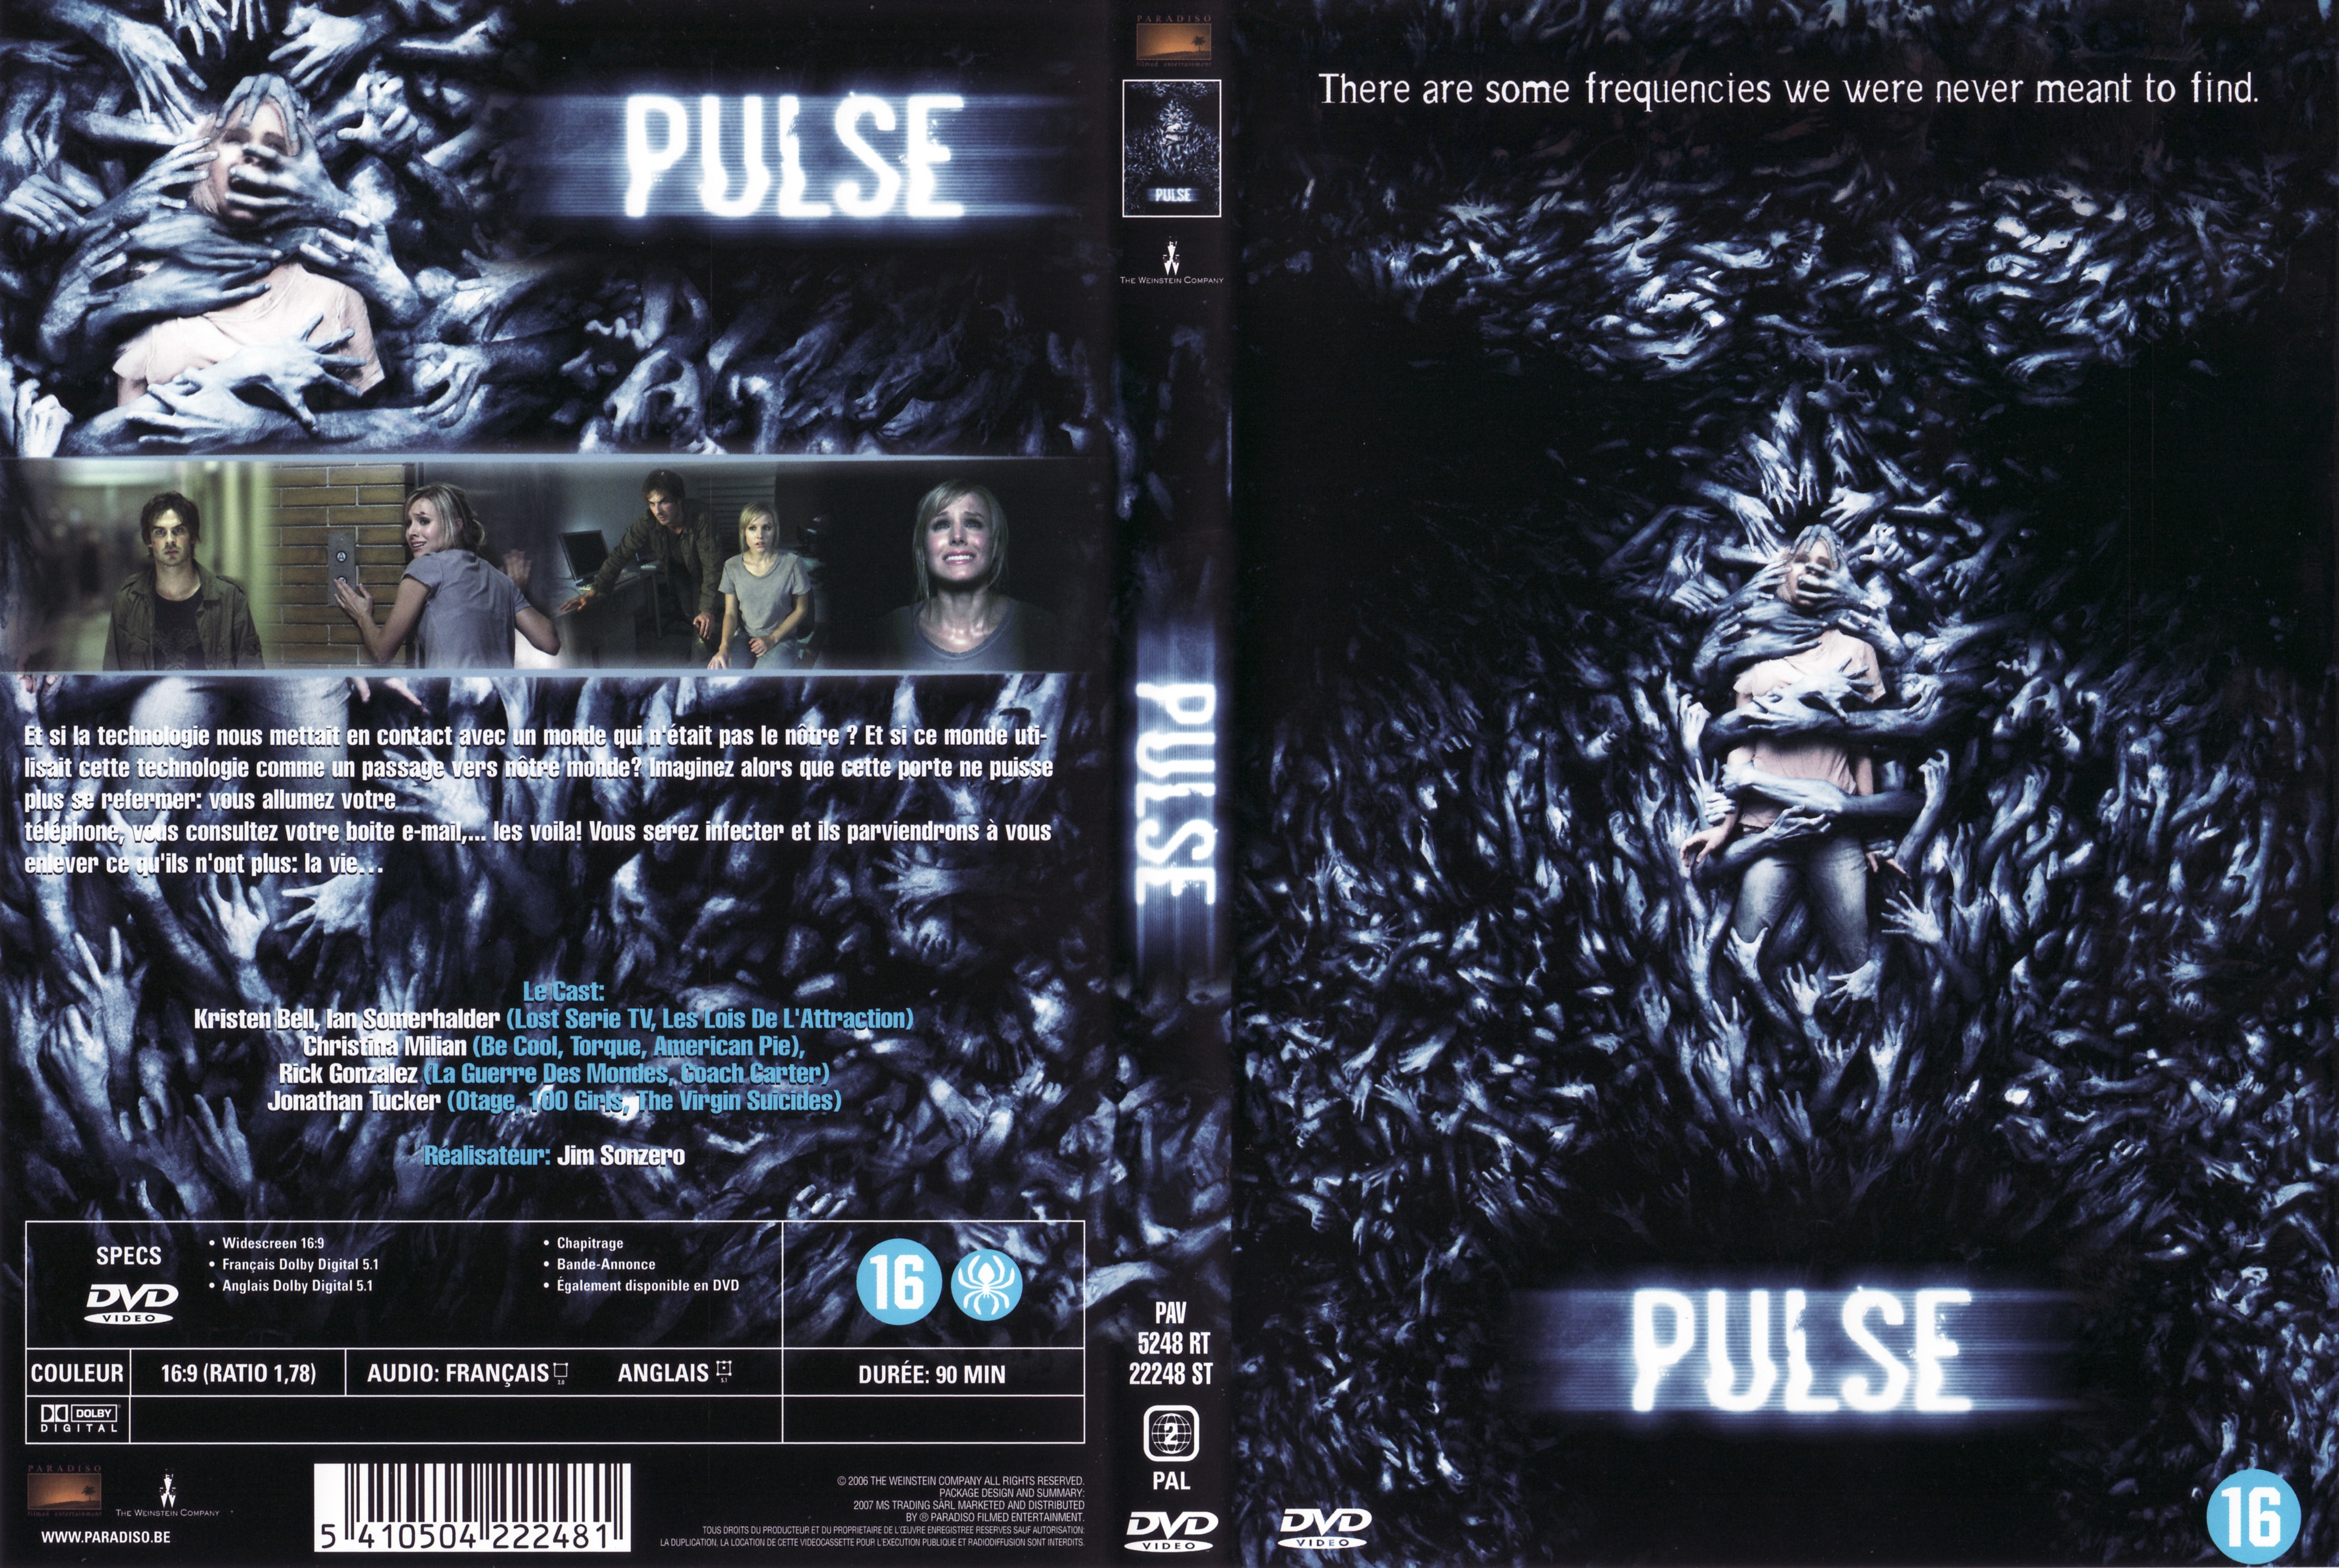 Jaquette DVD Pulse (2006) v2